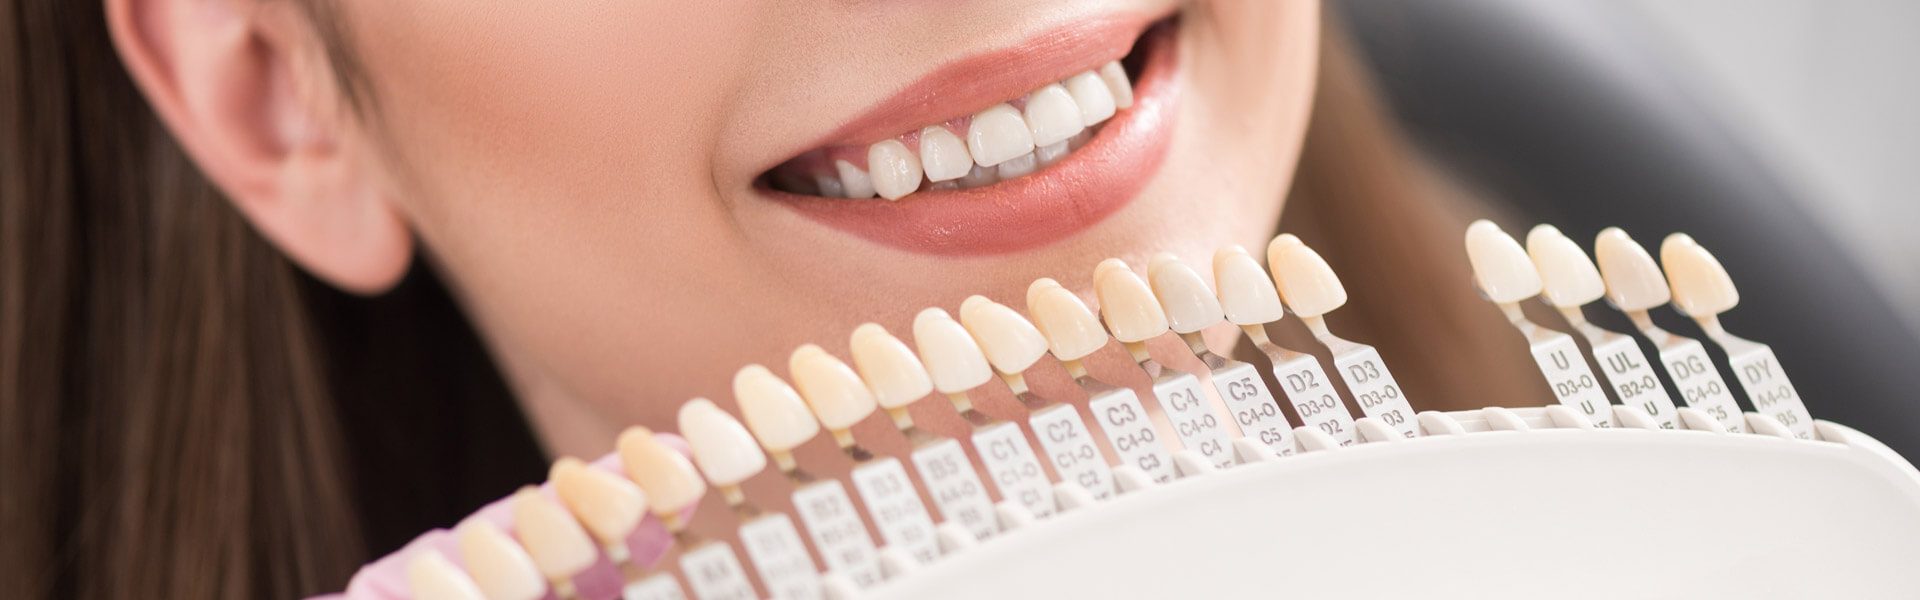 A Closer Look at Dental Veneers